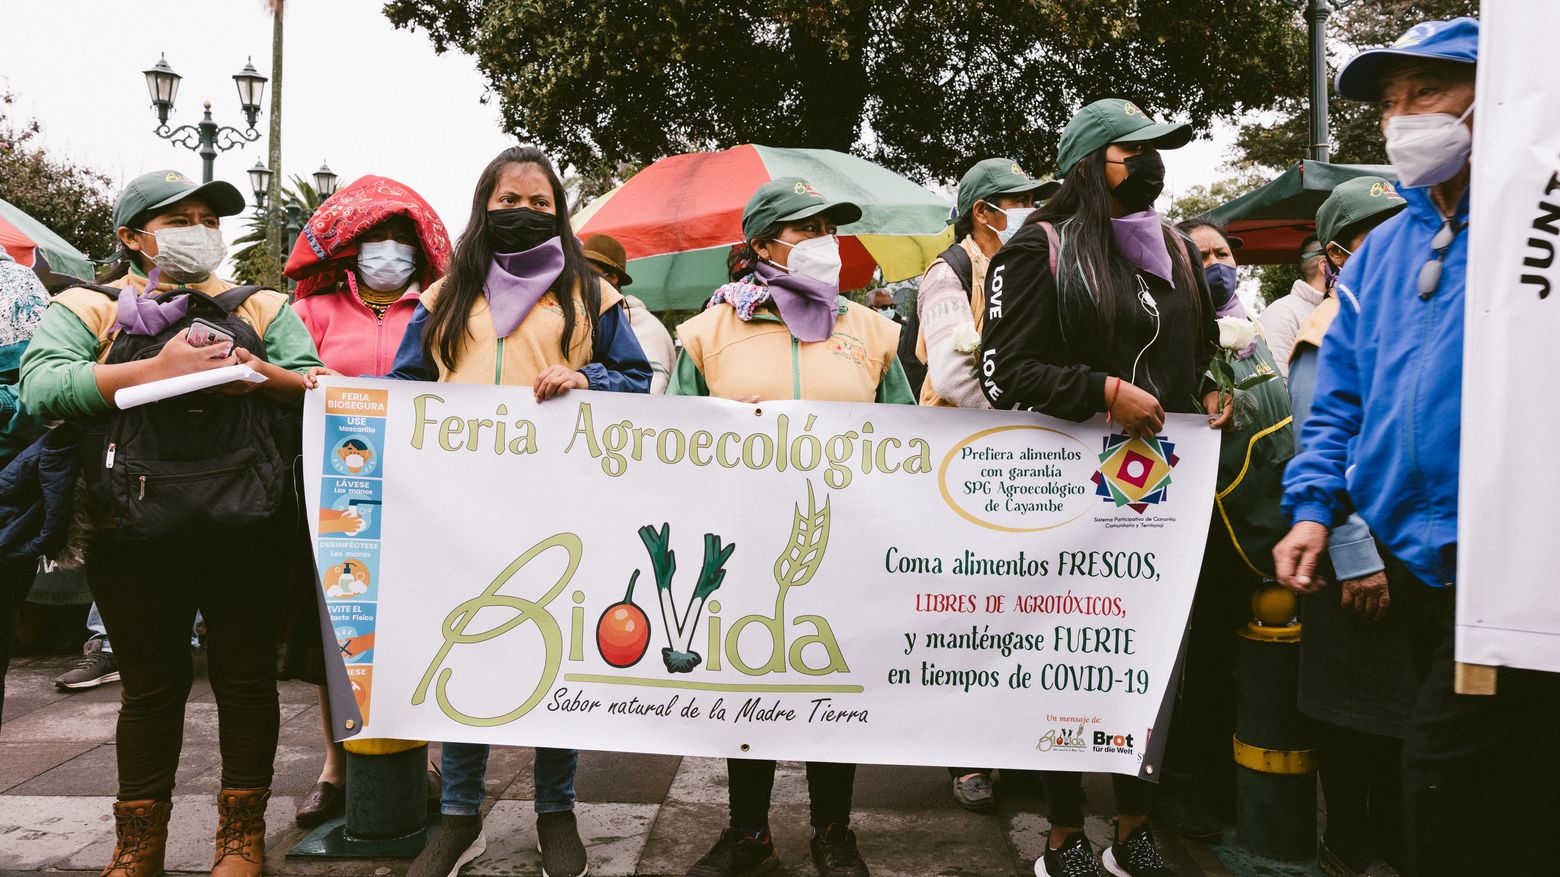 Erlinda Pillajo (49) und Frauen von Biovida halten ein Plakat hoch